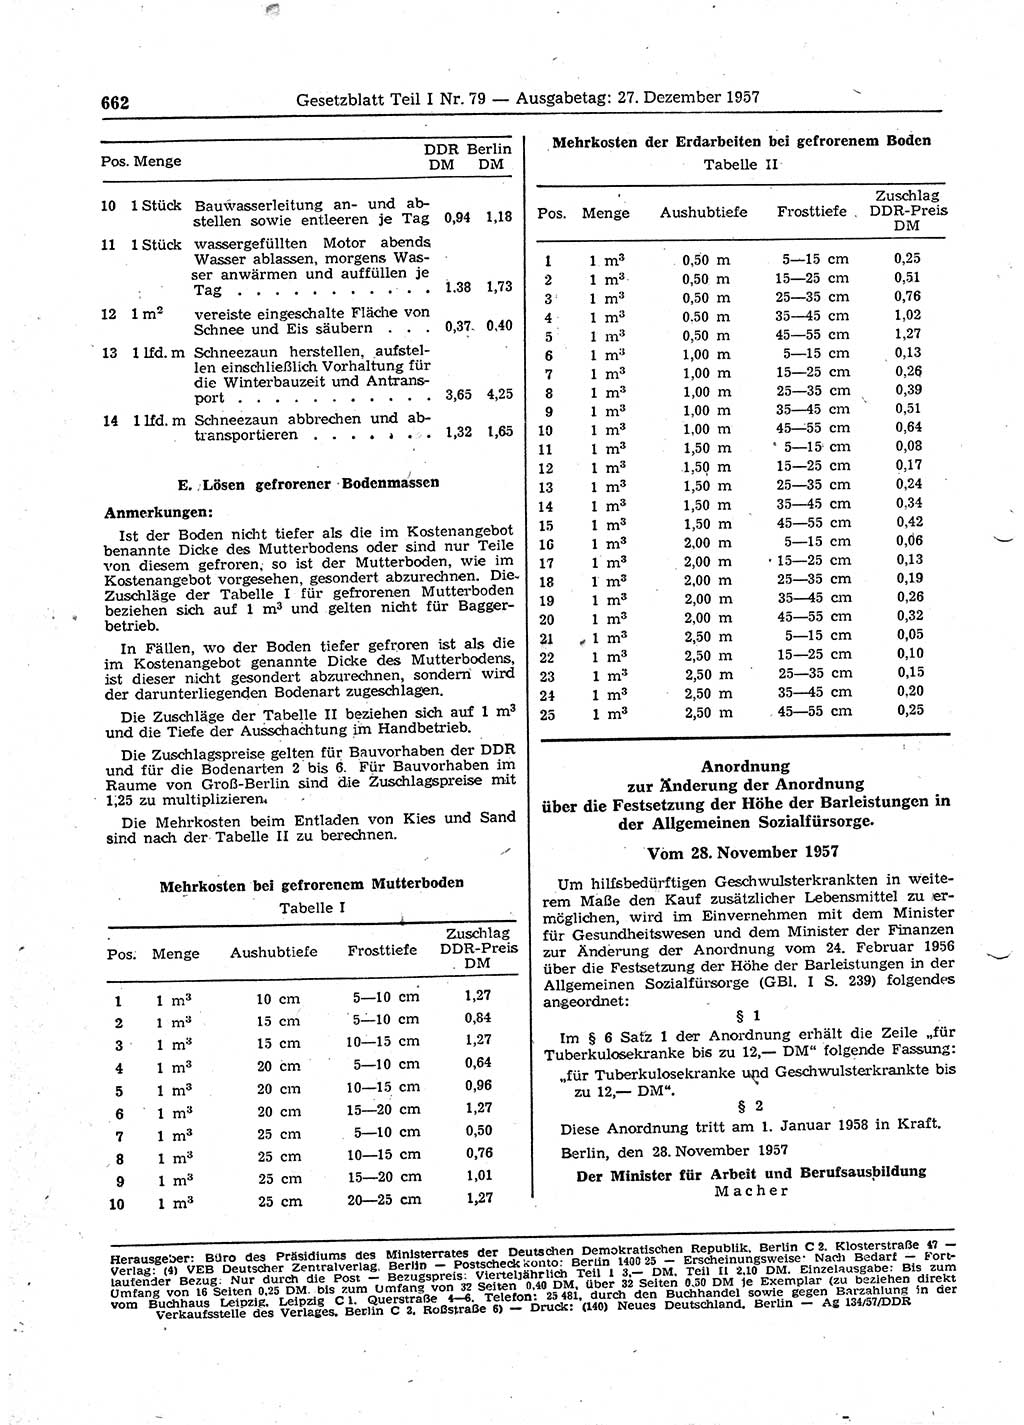 Gesetzblatt (GBl.) der Deutschen Demokratischen Republik (DDR) Teil Ⅰ 1957, Seite 662 (GBl. DDR Ⅰ 1957, S. 662)